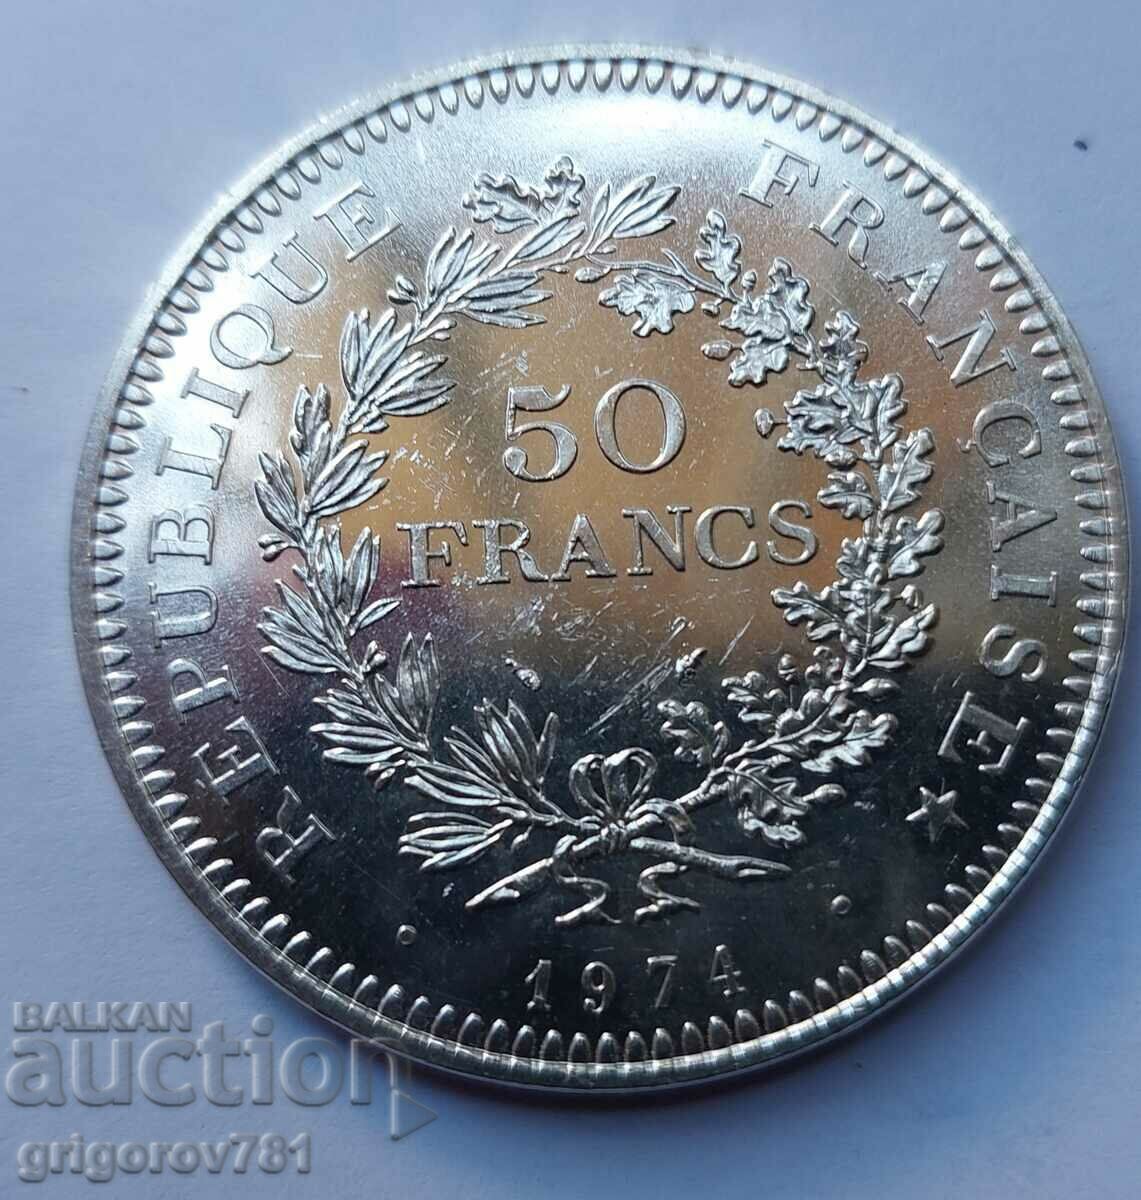 50 Franci Argint Franta 1974 - Moneda de argint #25